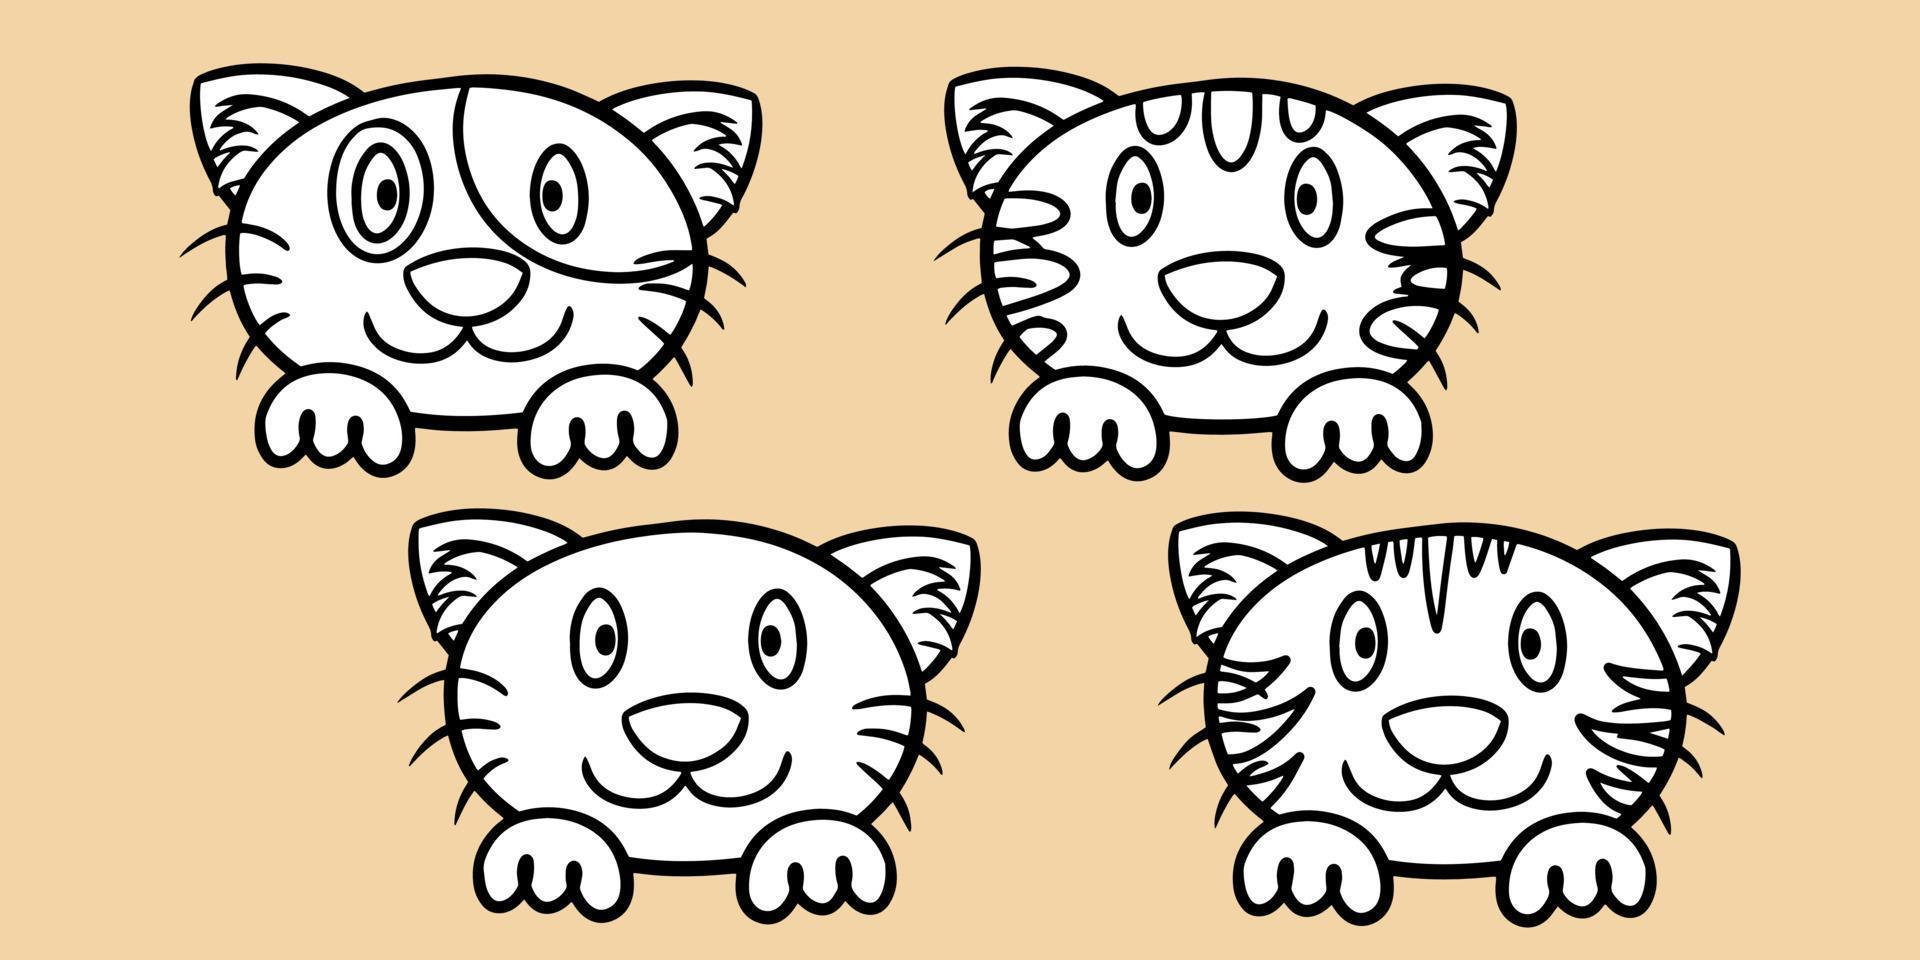 un conjunto de dibujos animados de gatos monocromáticos en blanco y negro con patas, caras de gato con diferentes emociones, ilustración vectorial en un fondo claro vector